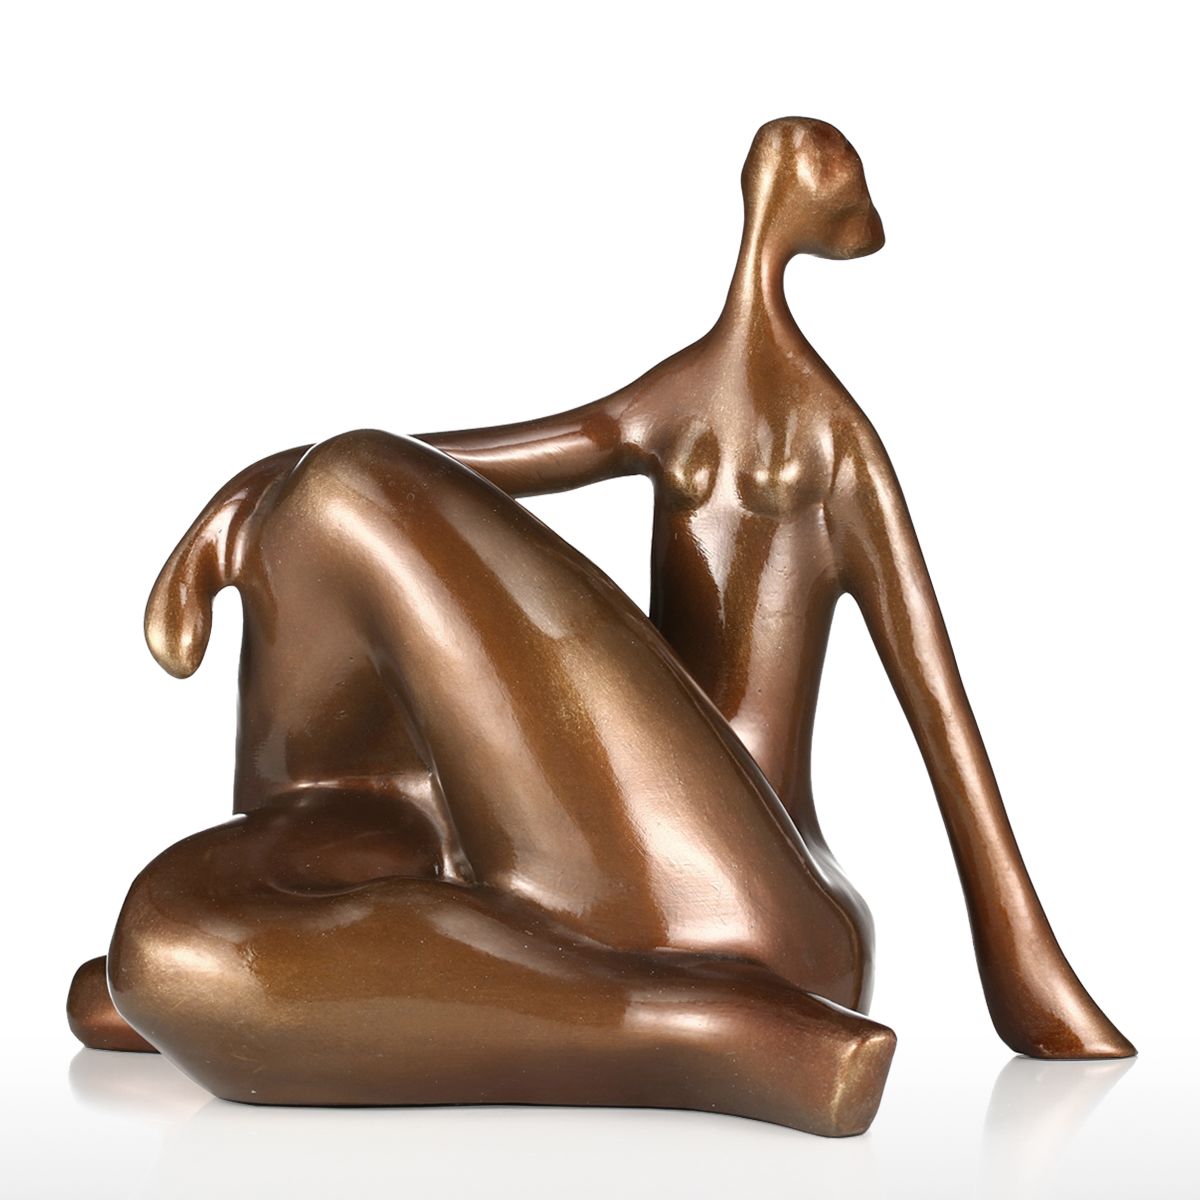 Plump Women Yoga Hunker Figurine - Sweet Home Make